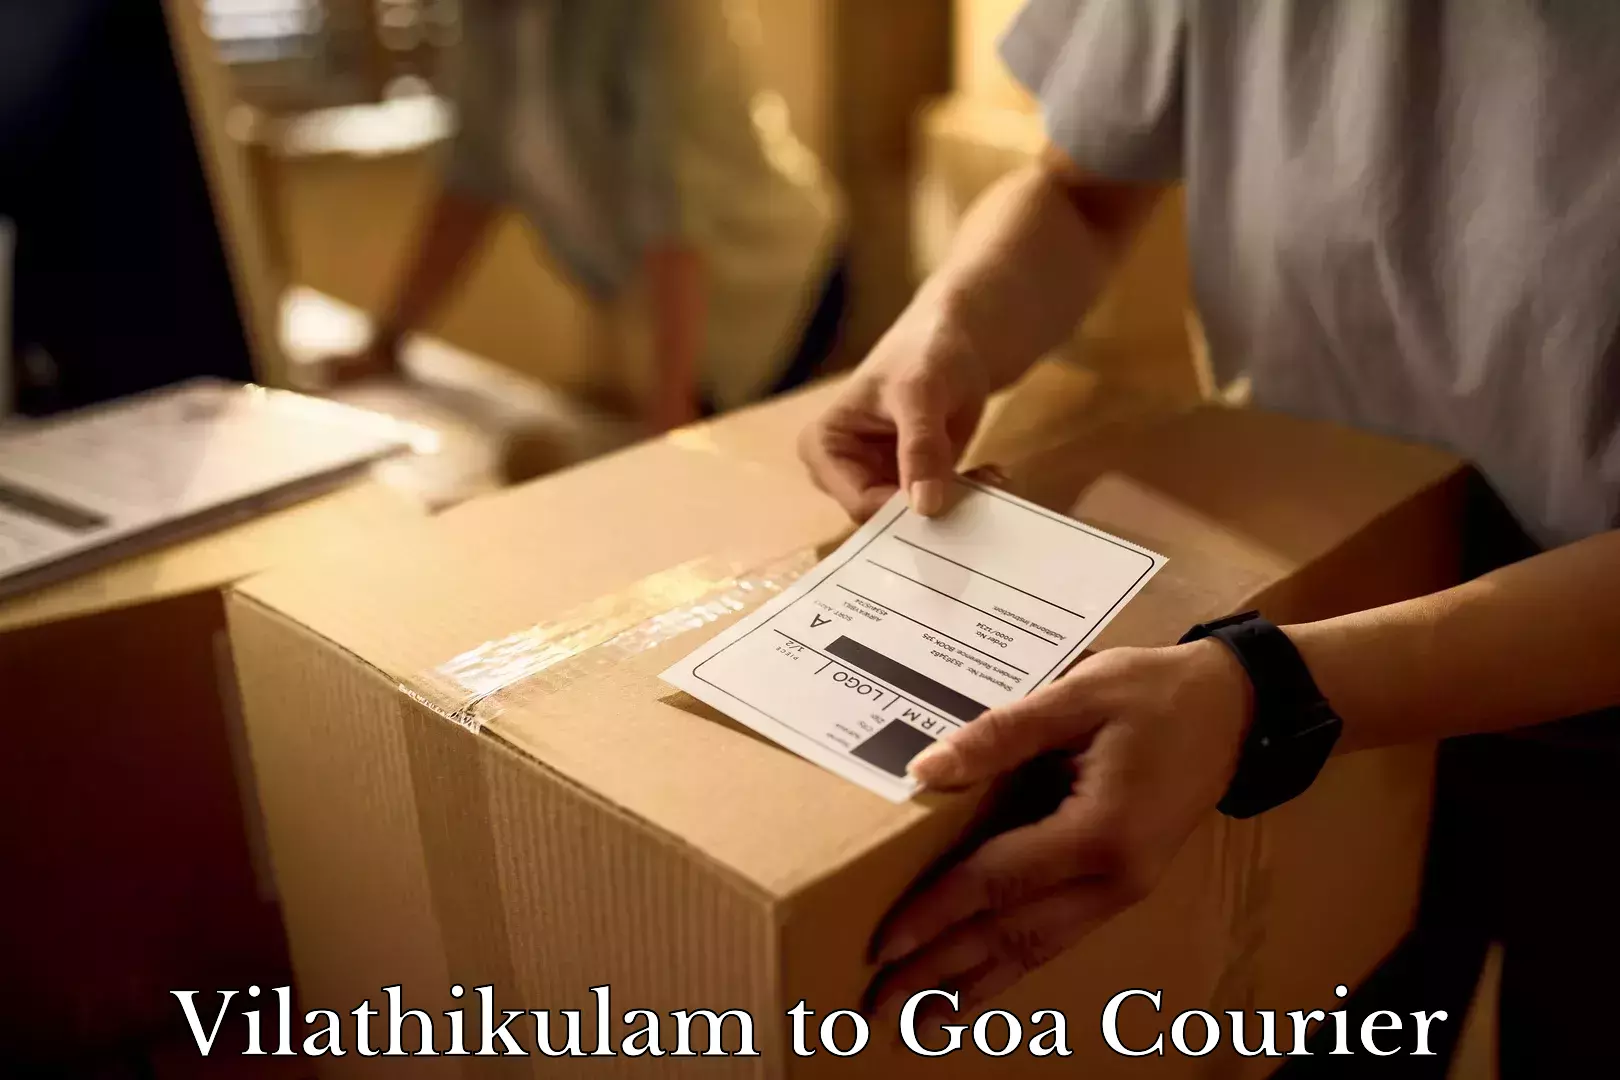 Professional movers Vilathikulam to IIT Goa